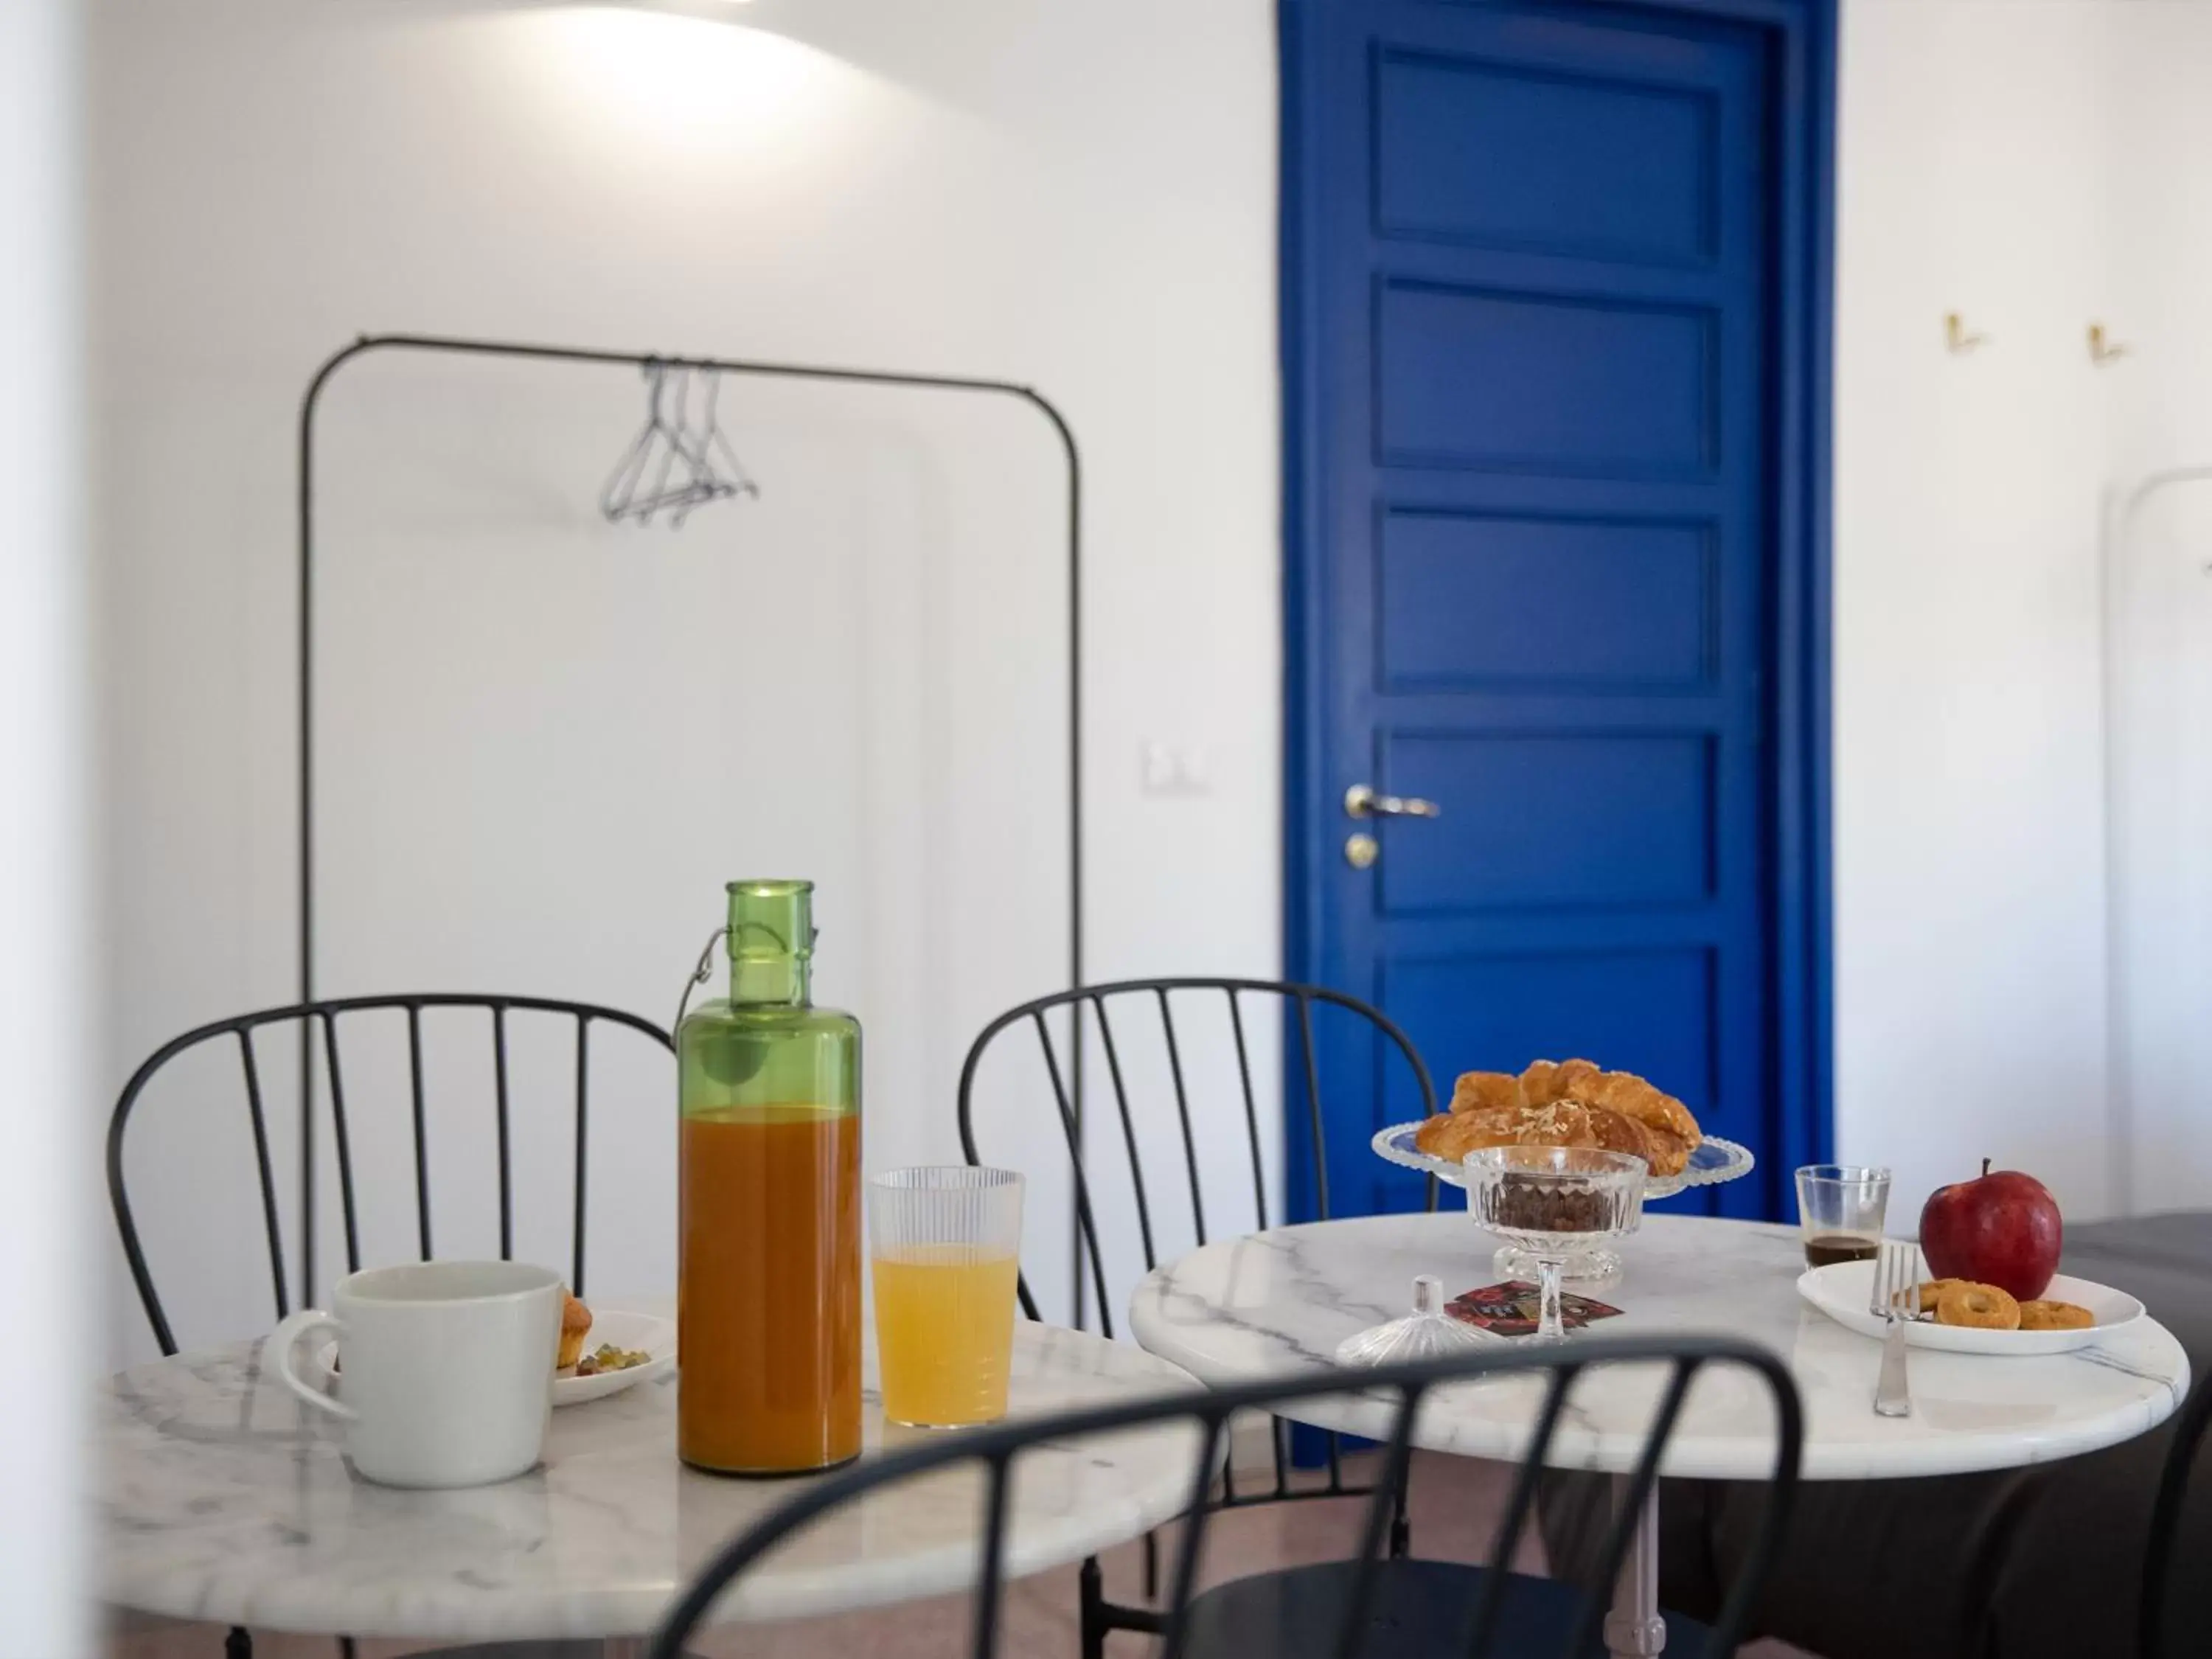 Photo of the whole room, Breakfast in Salotto Borbonico